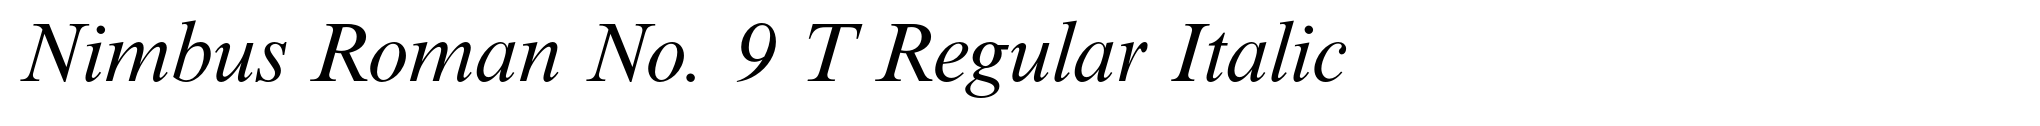 Nimbus Roman No. 9 T Regular Italic image